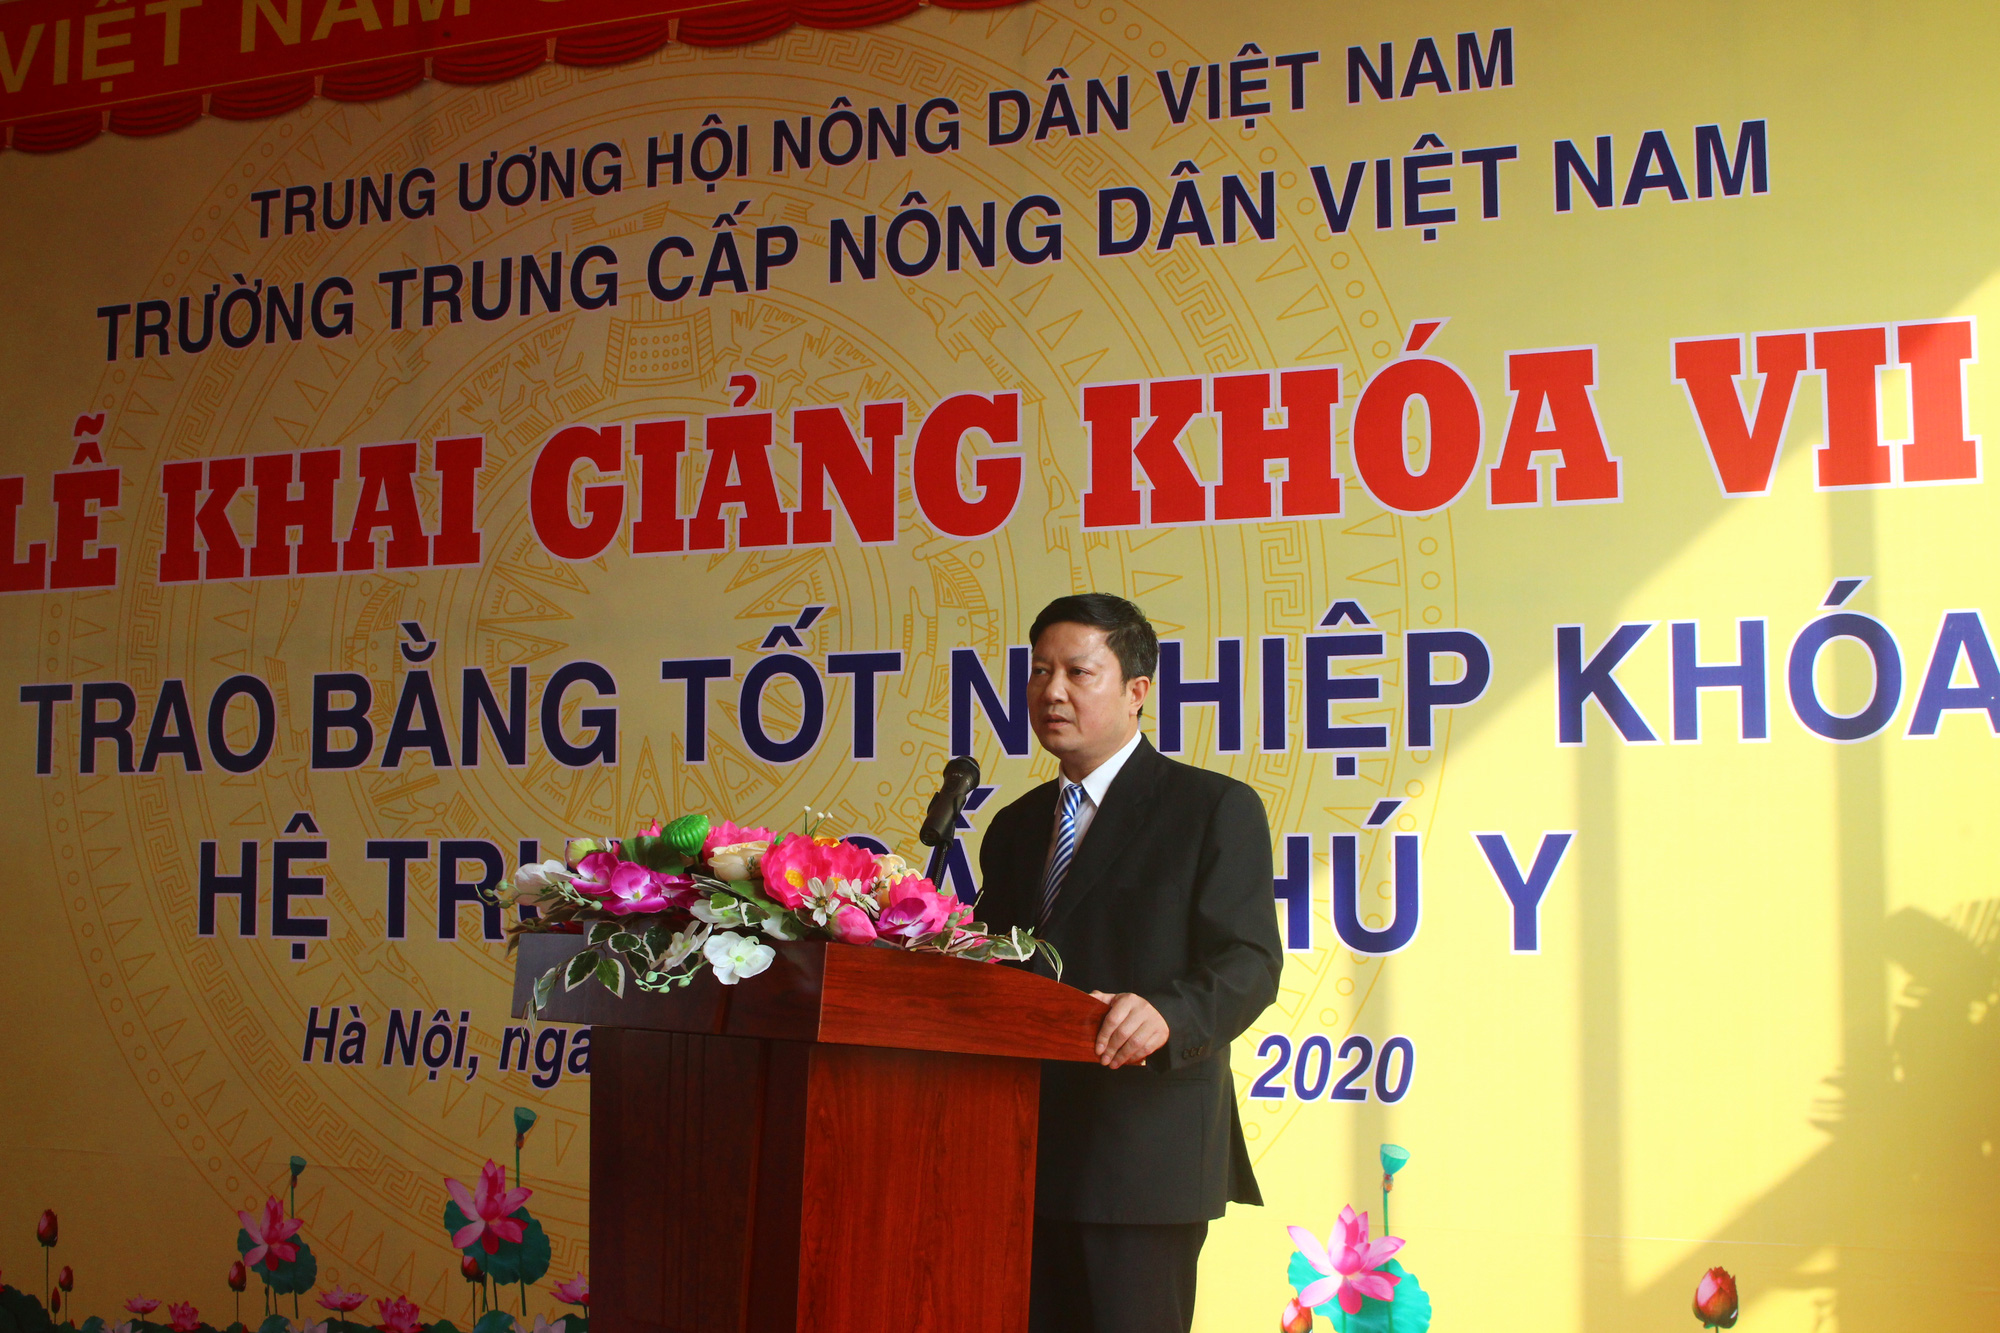 Trường Trung cấp Nông dân Việt Nam: Nâng cao chất lượng đào tạo nghề, nhân rộng mô hình hay - Ảnh 2.